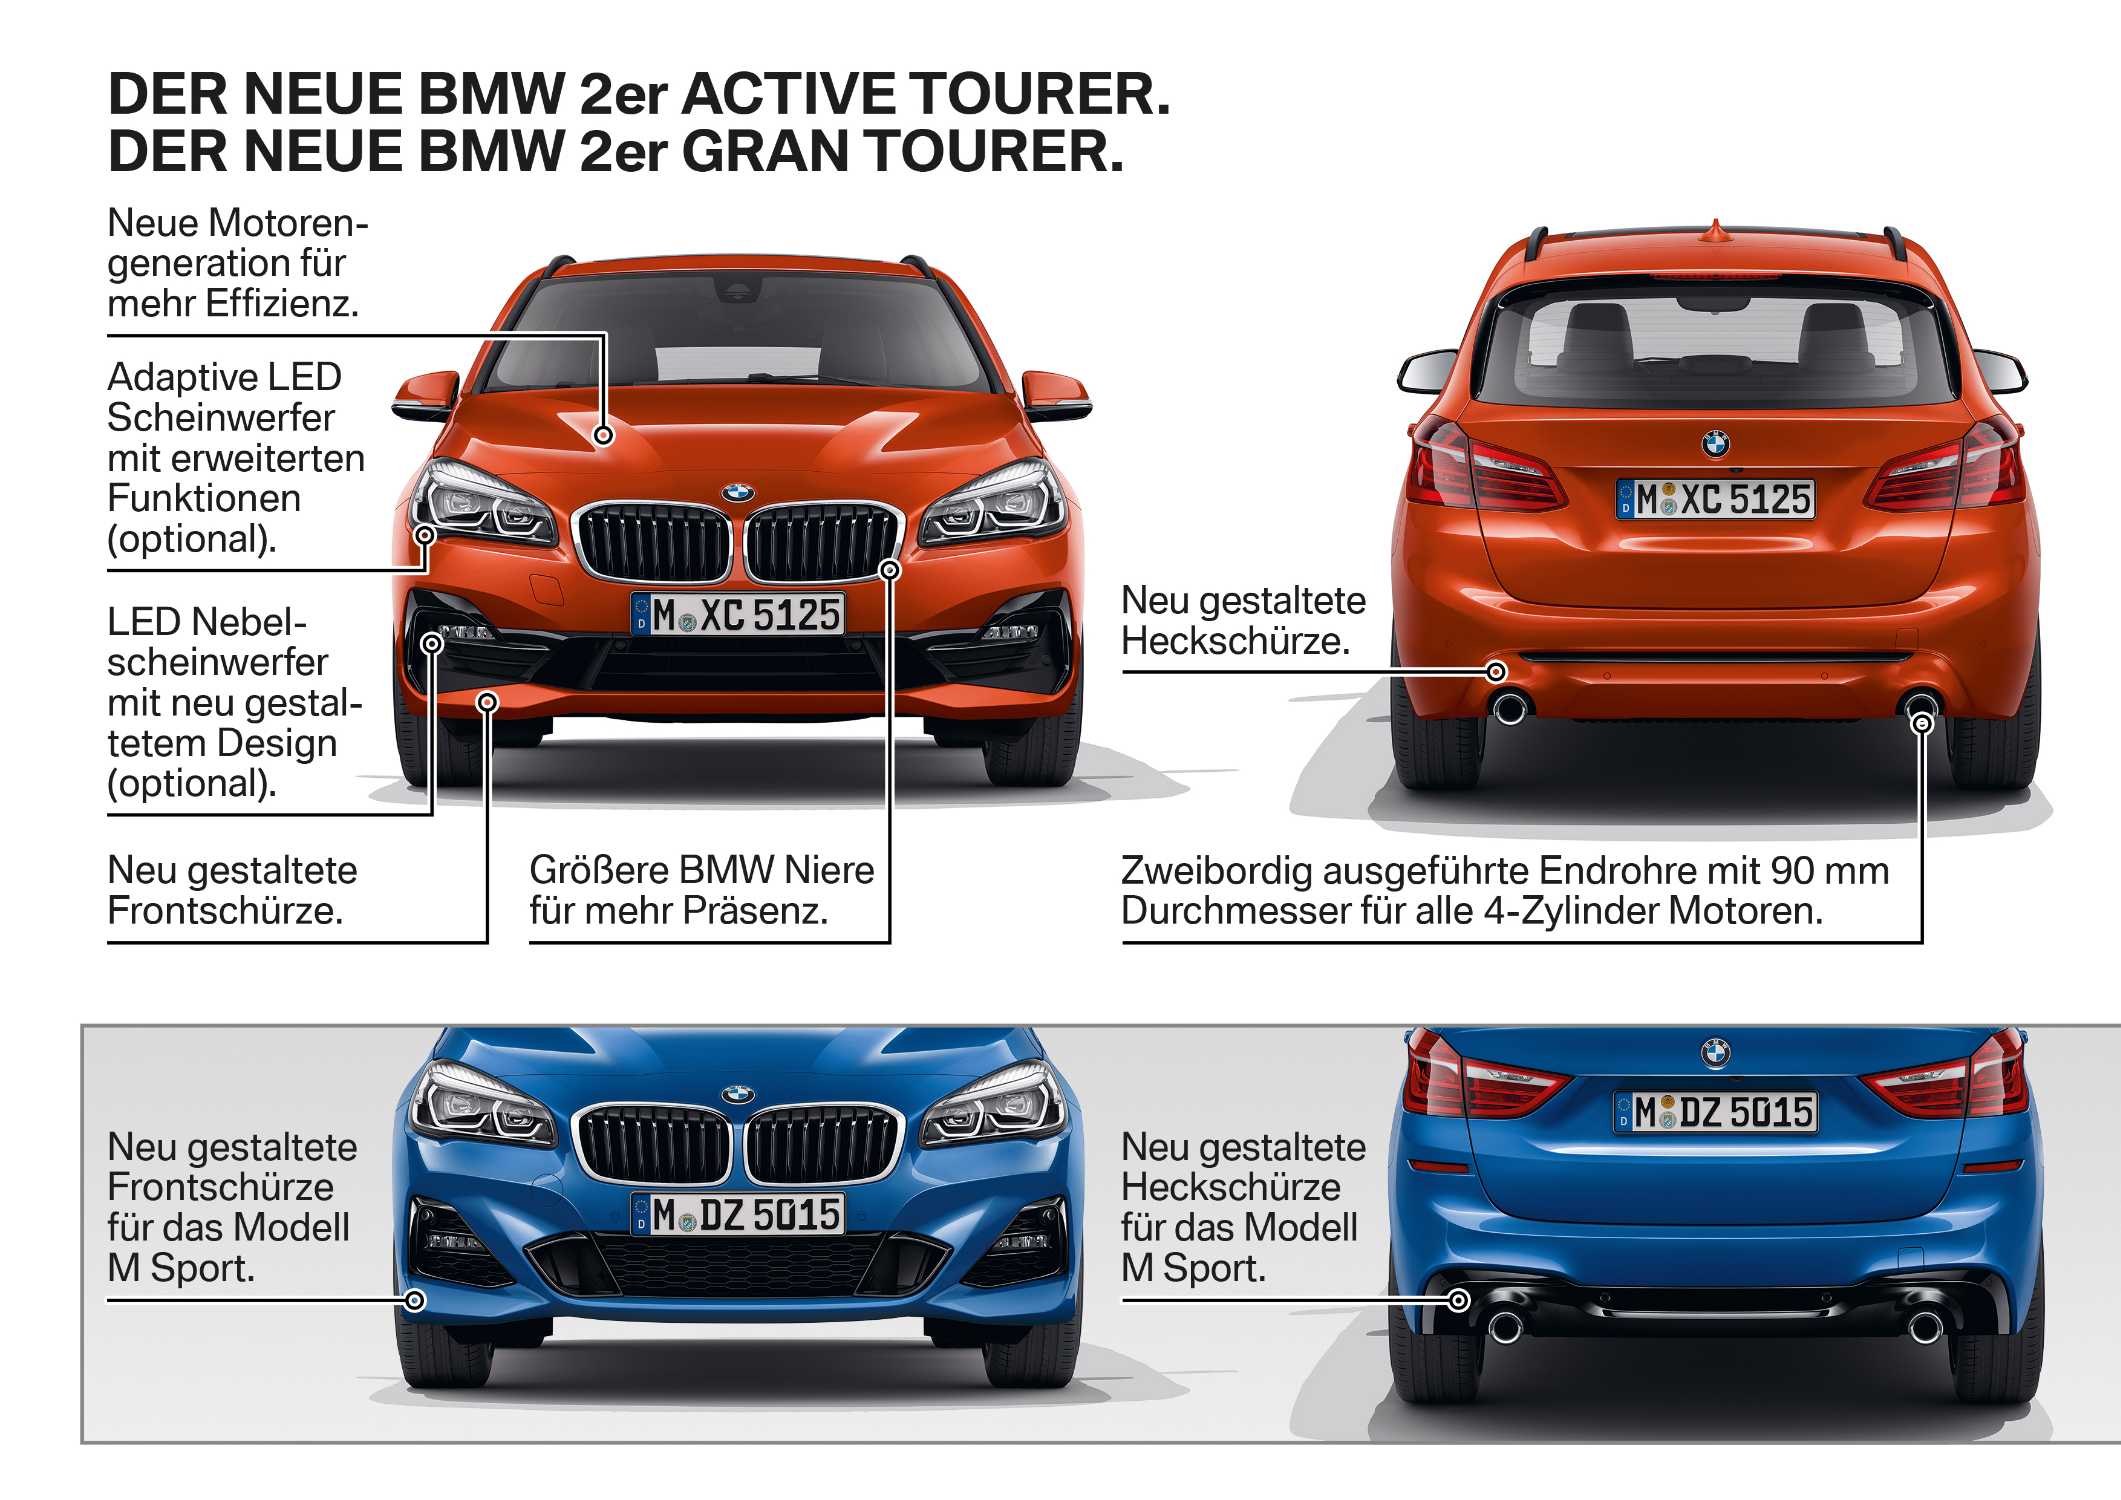 Der neue BMW 2er Active Tourer. Der neue BMW 2er Gran Tourer.